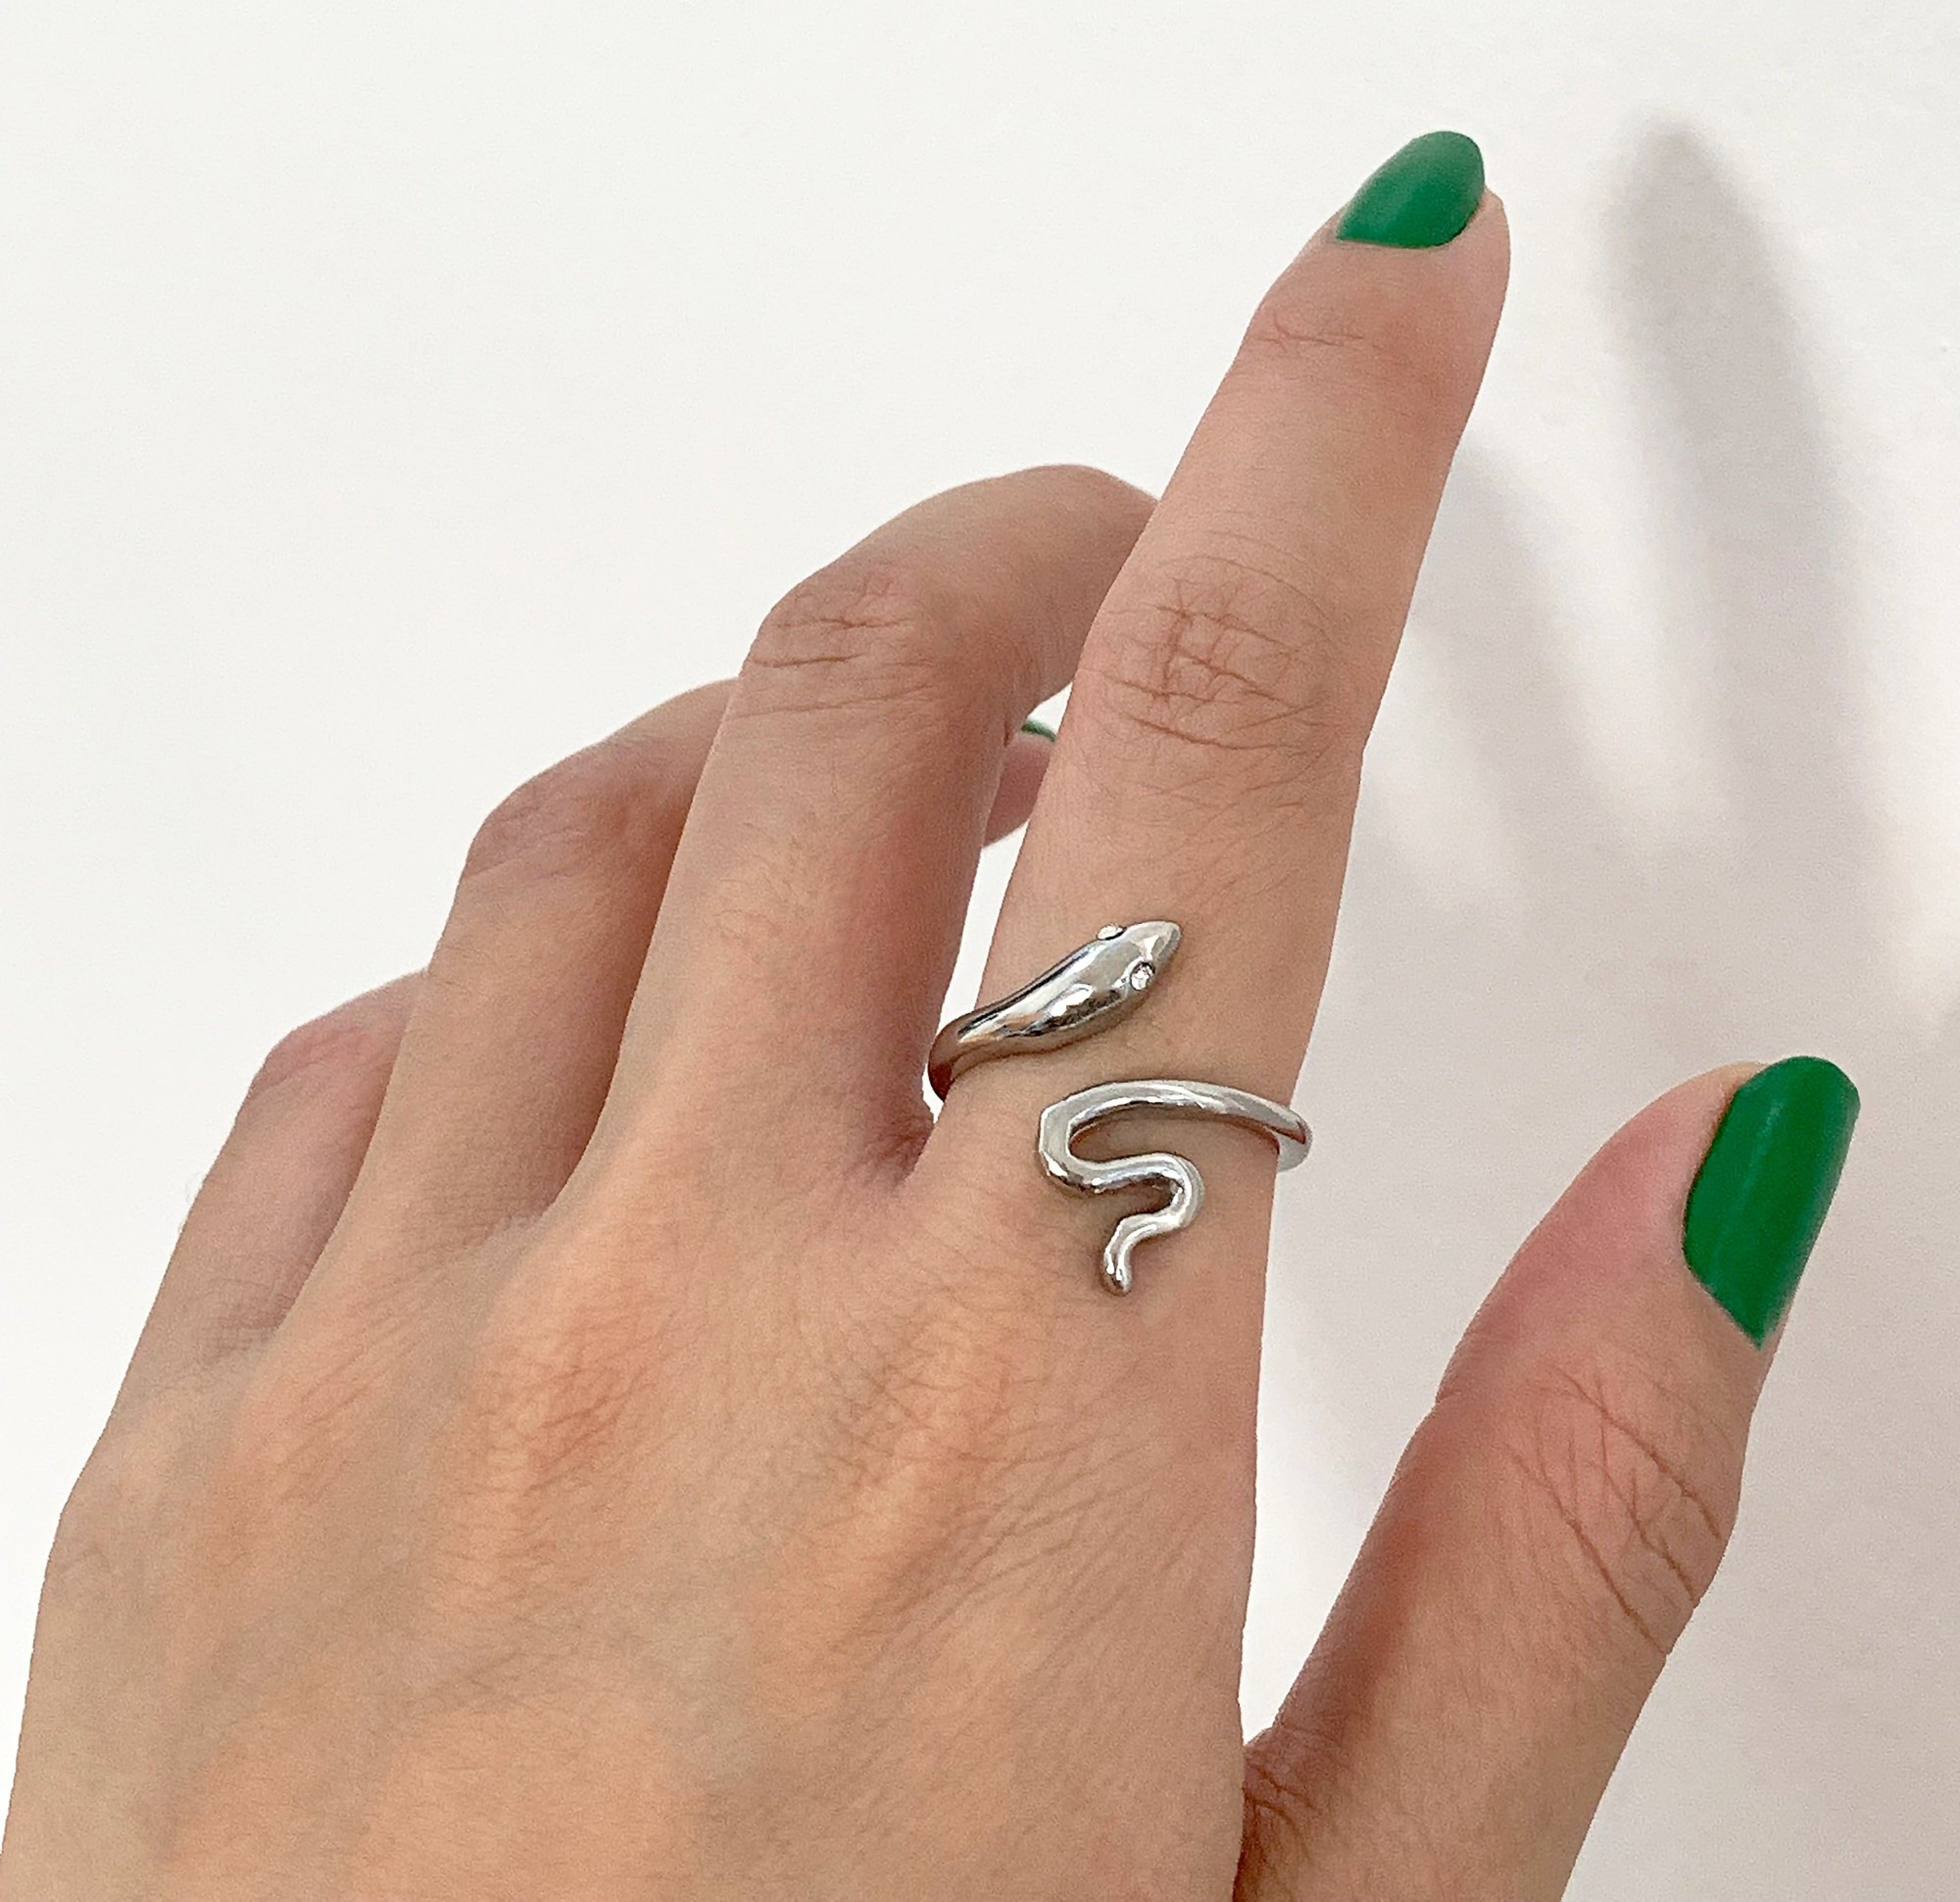 silver snake ring. Silver waterproof jewelry 